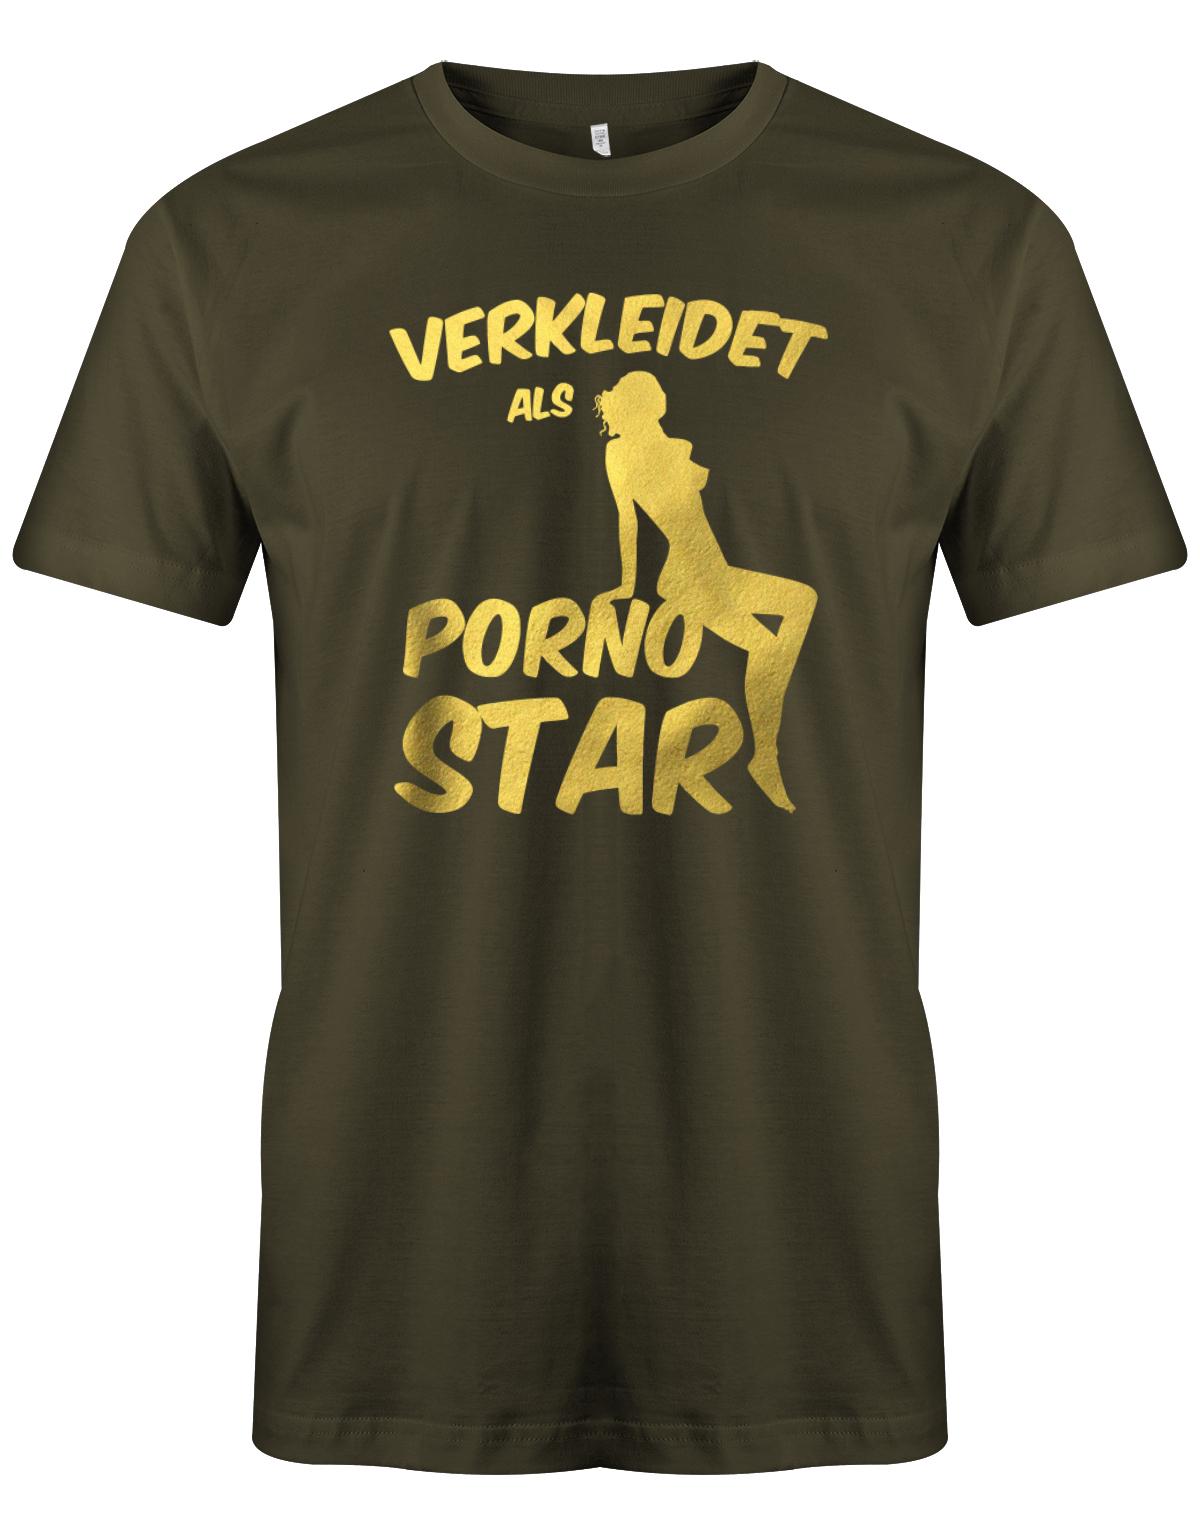 Verkleidet-als-Pornostar-Herren-Shirt-Army